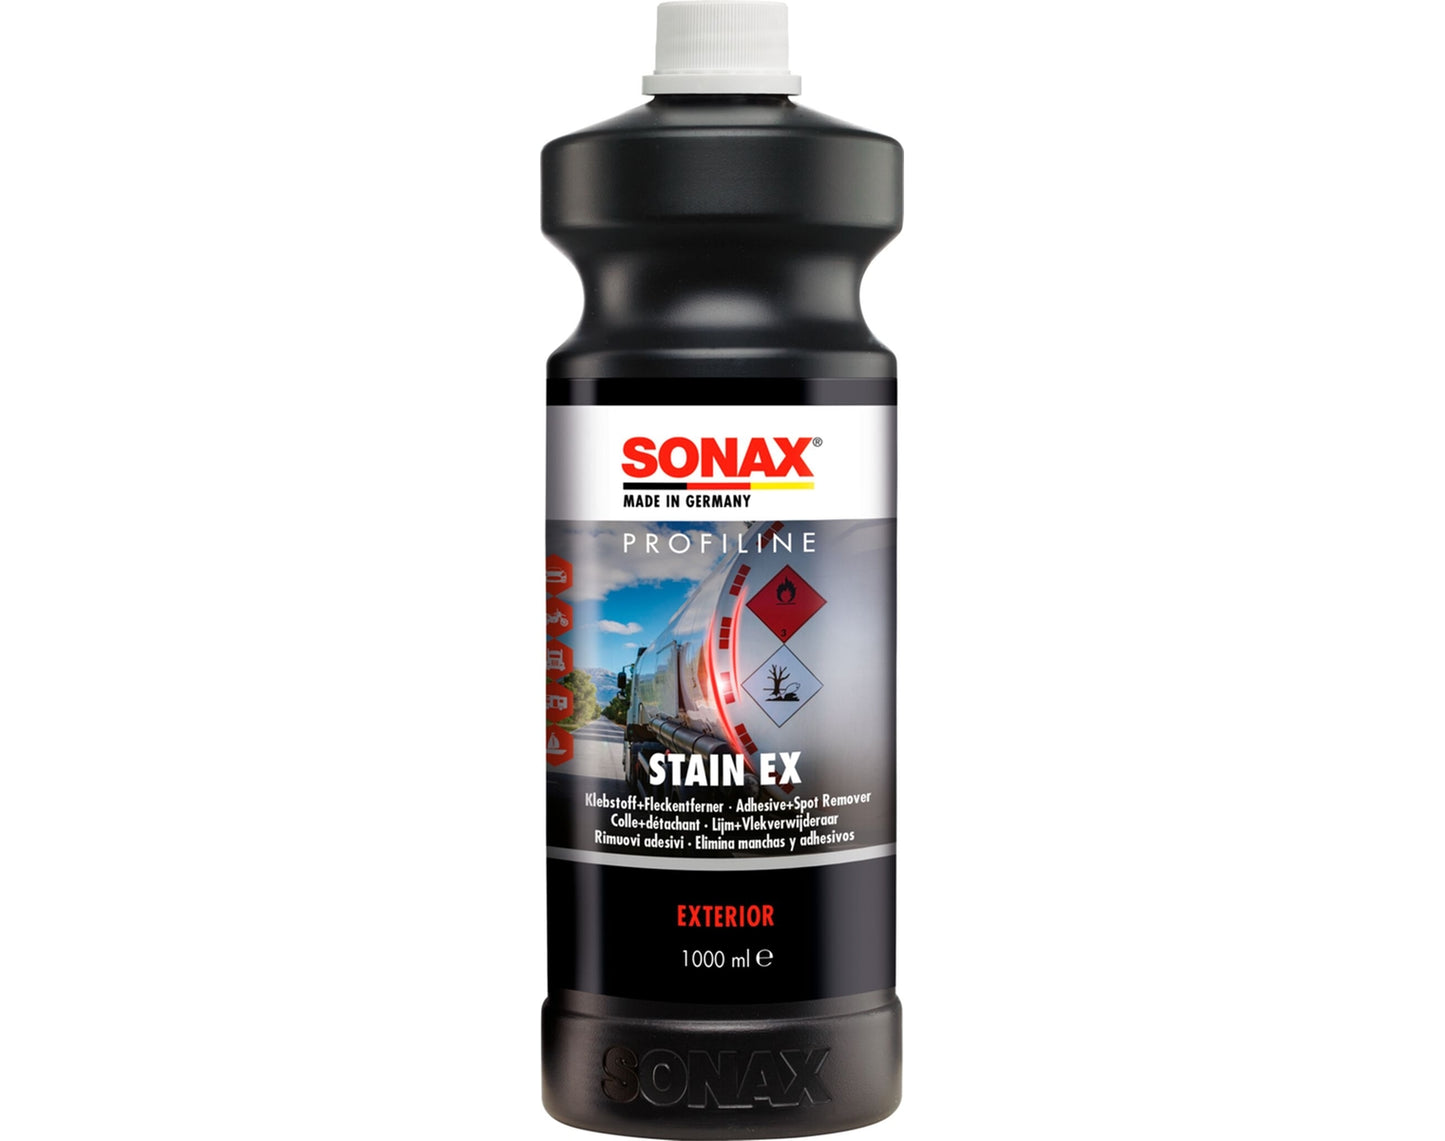 Sonax PROFILINE Stain Ex, Klebstoff + Fleckenentferner (1 Liter)